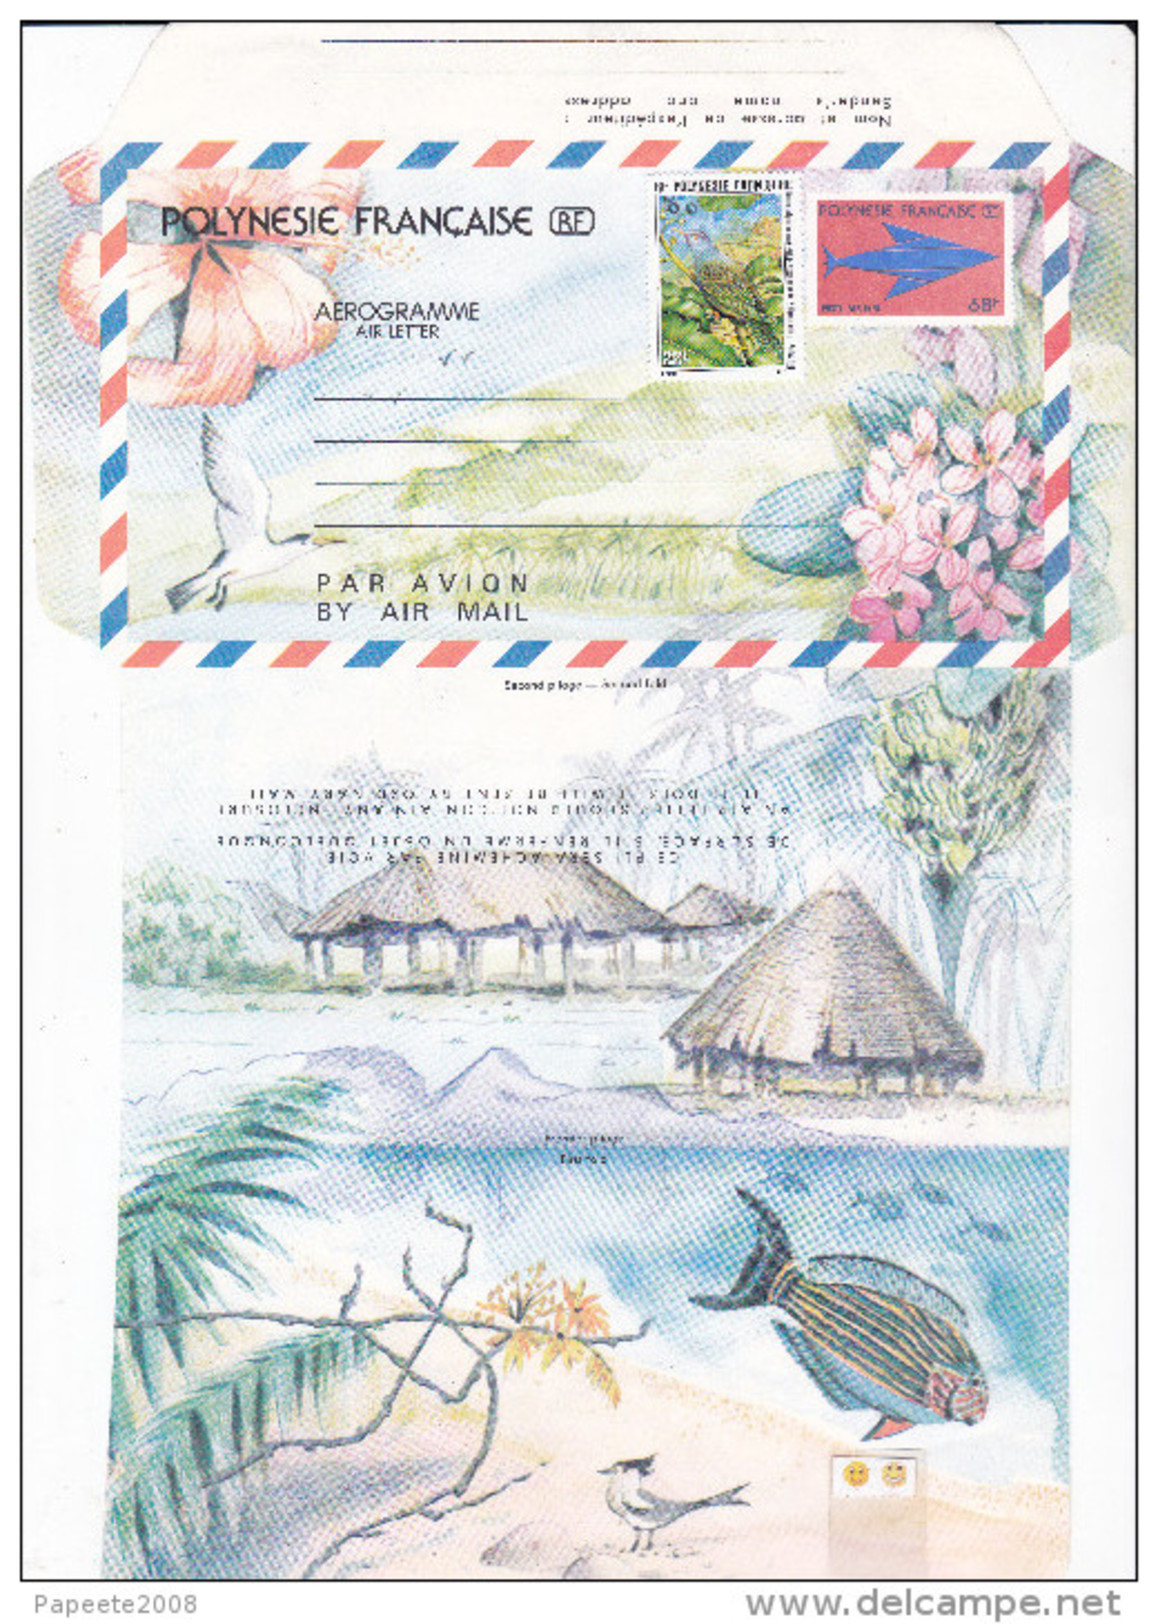 Polynesie Française / Tahiti - Aérogramme à 68 F CFP - 1988 - Neuf / Surchargé à 100 F - Aérogrammes